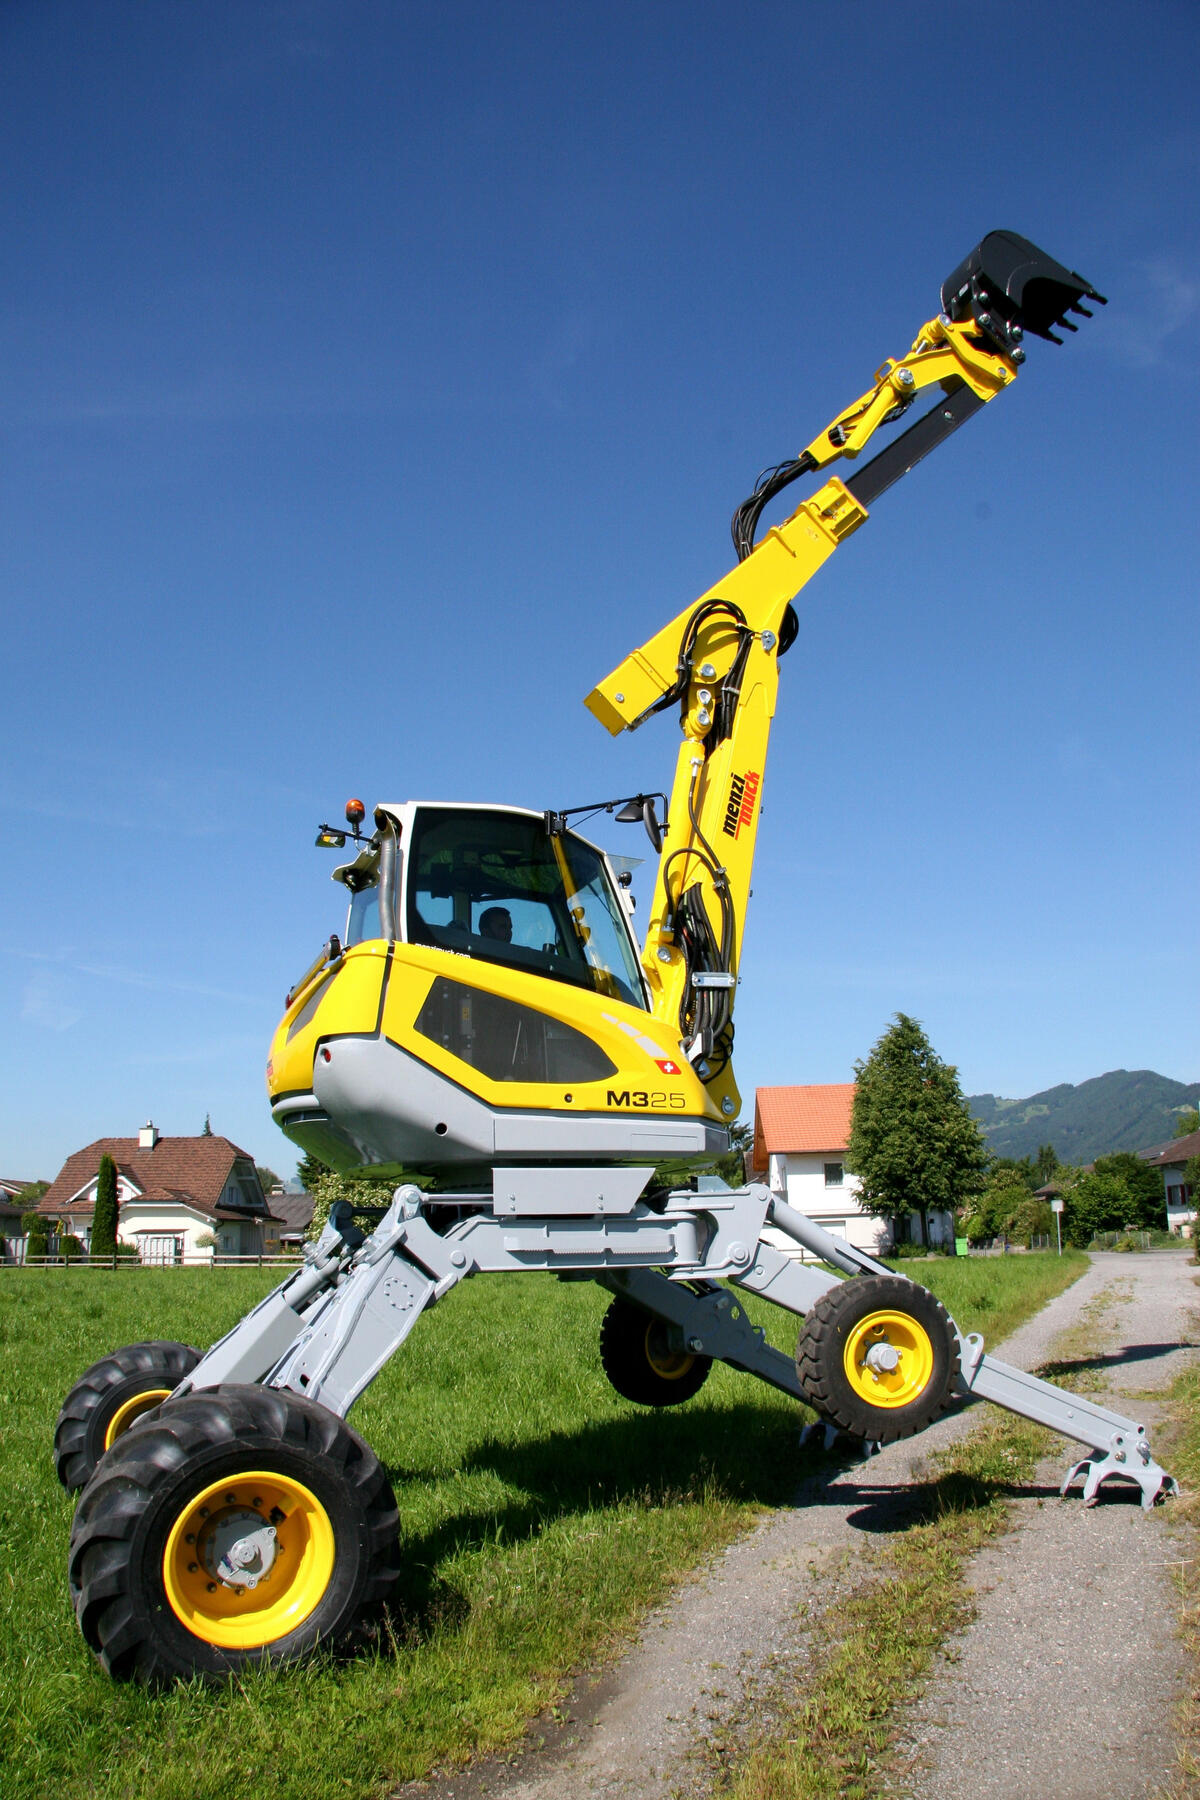 No ordinary tractor excavator